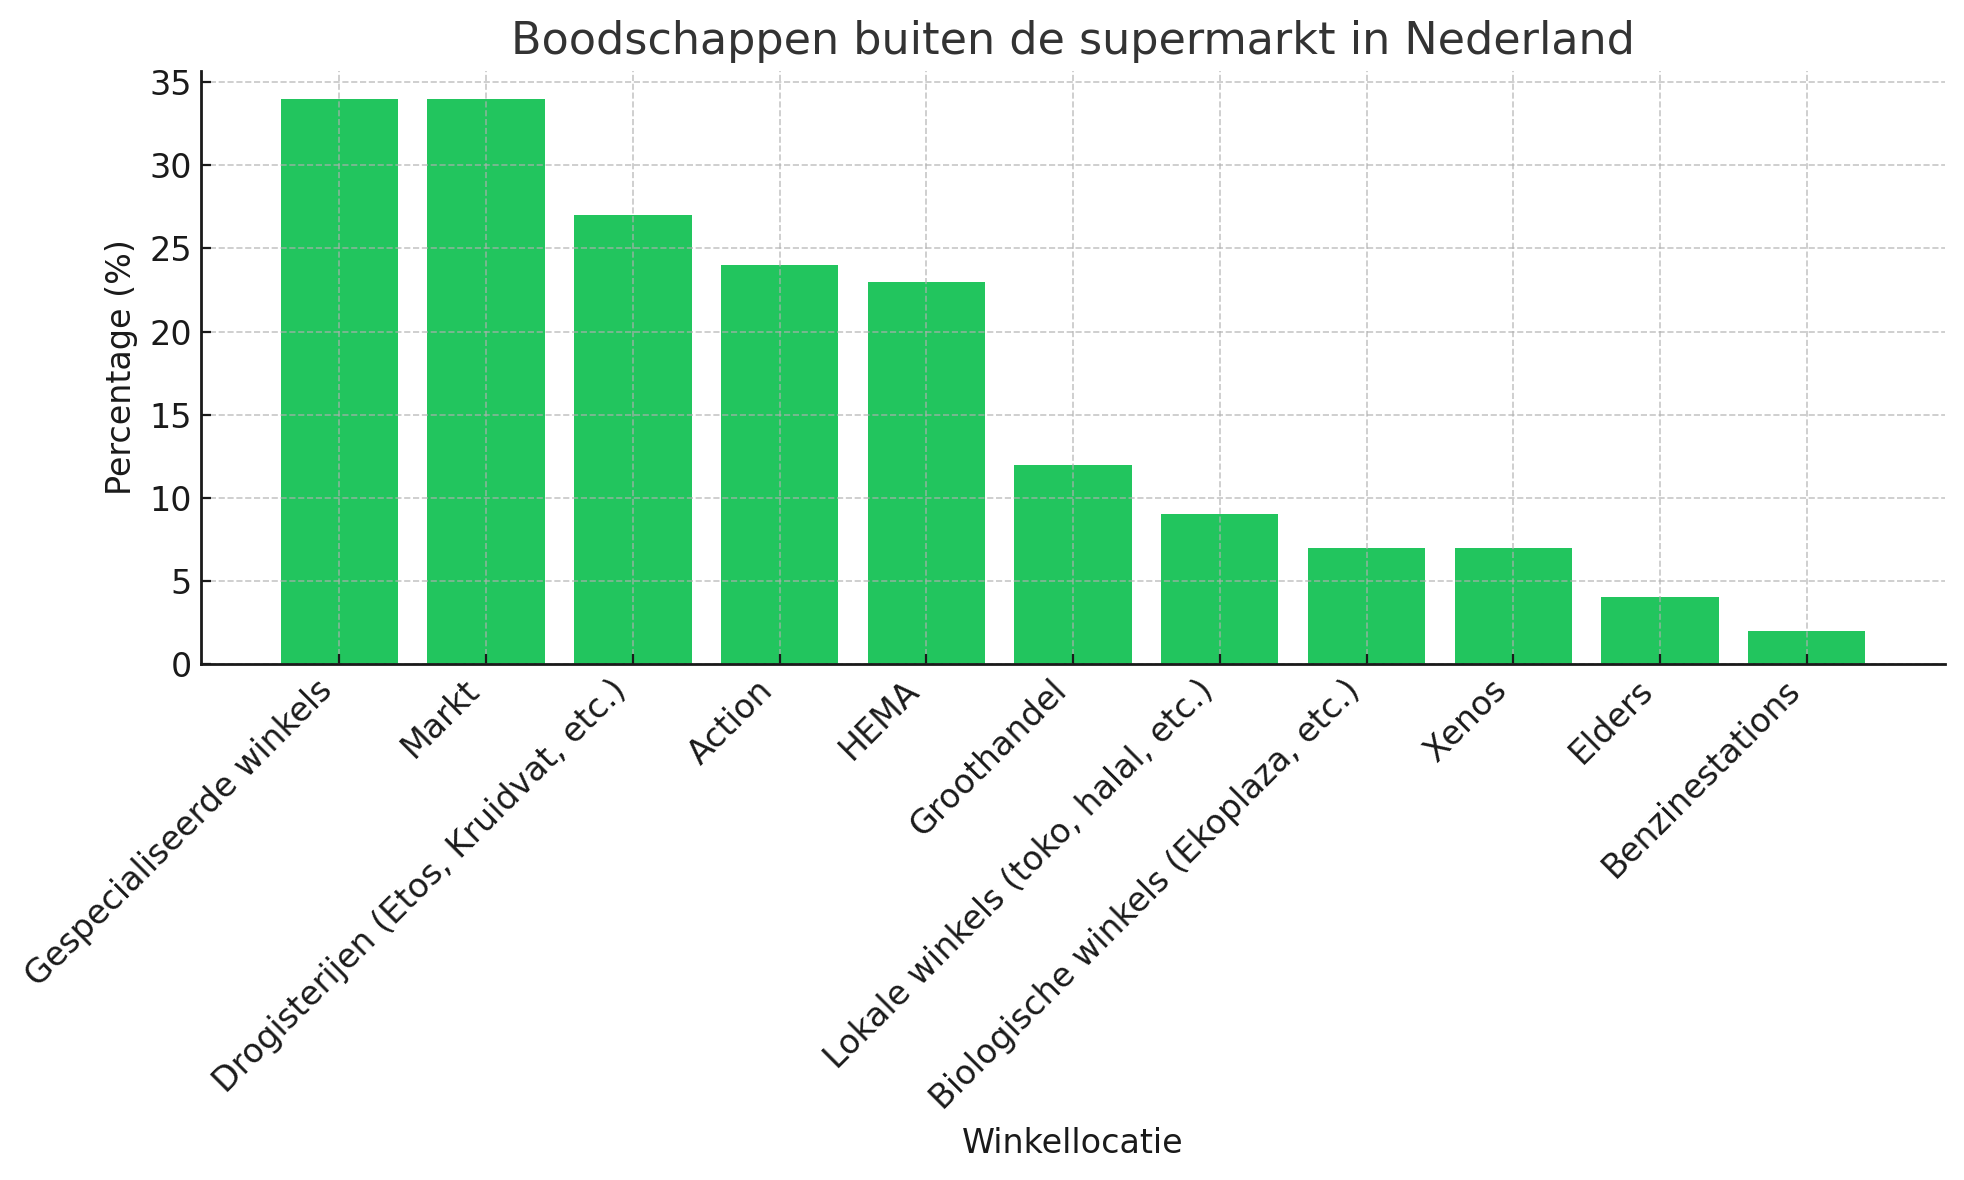 Boodschappen buiten de supermarkt in Nederland